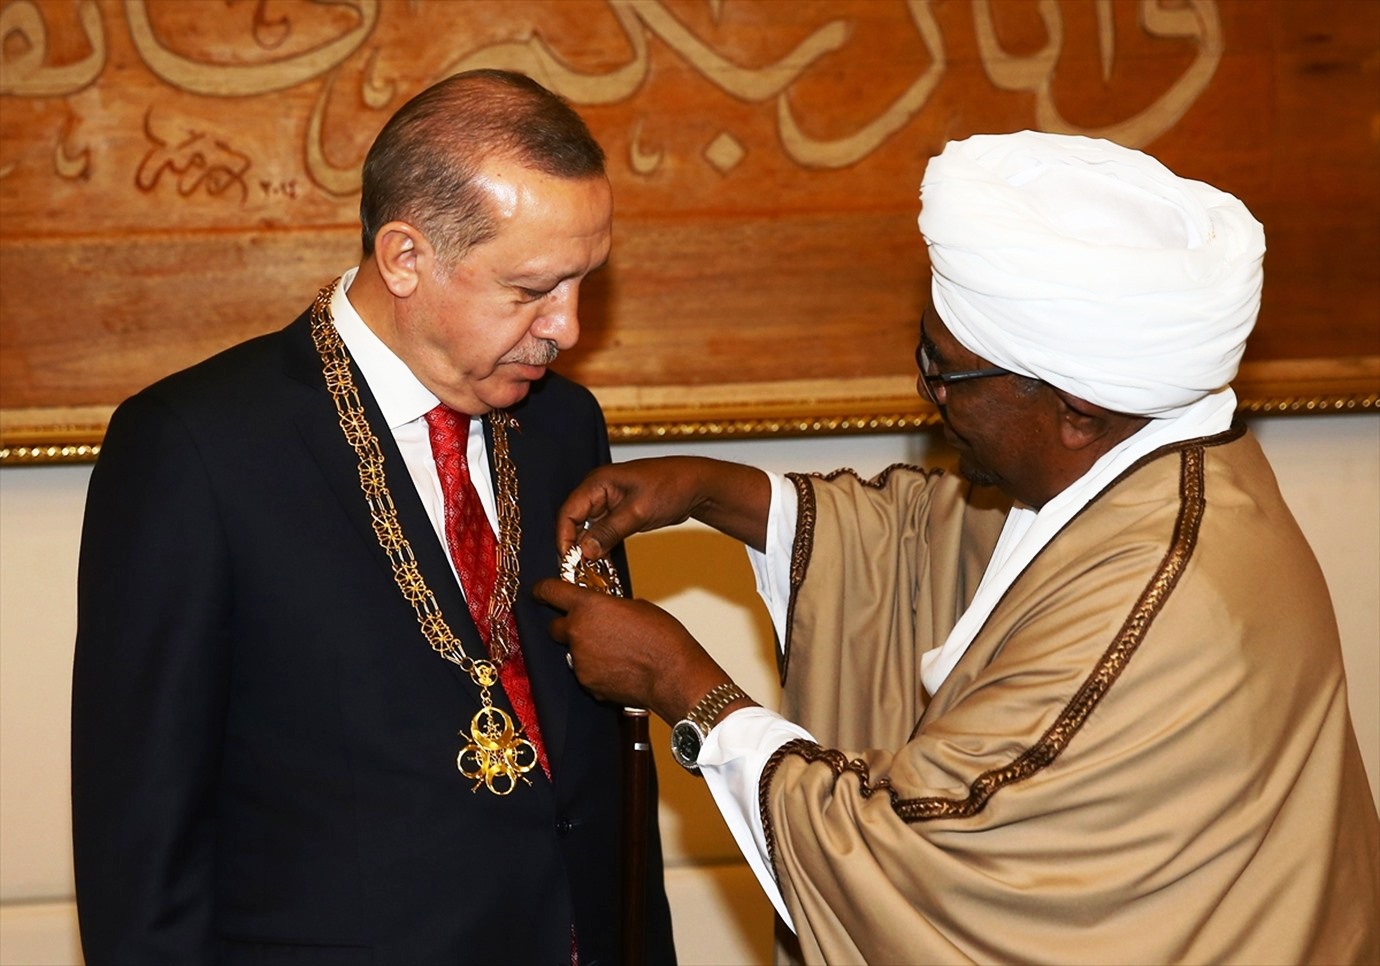 الرئيس السوداني عمر البشر يقلد الرئيس التركي أرفع وسام 